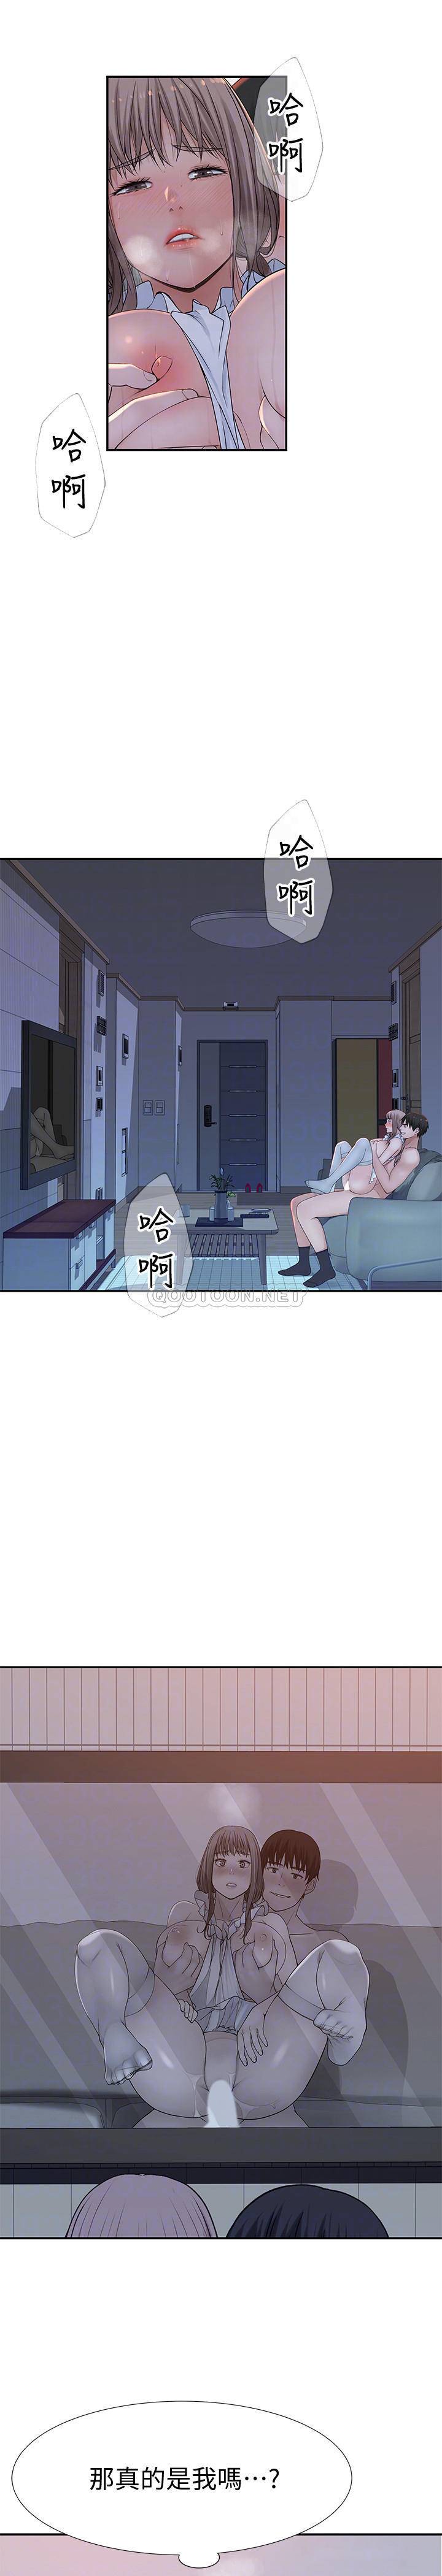 韩国污漫画 我們的非常關系 第44话-纯欣的内衣照传遍网路 4